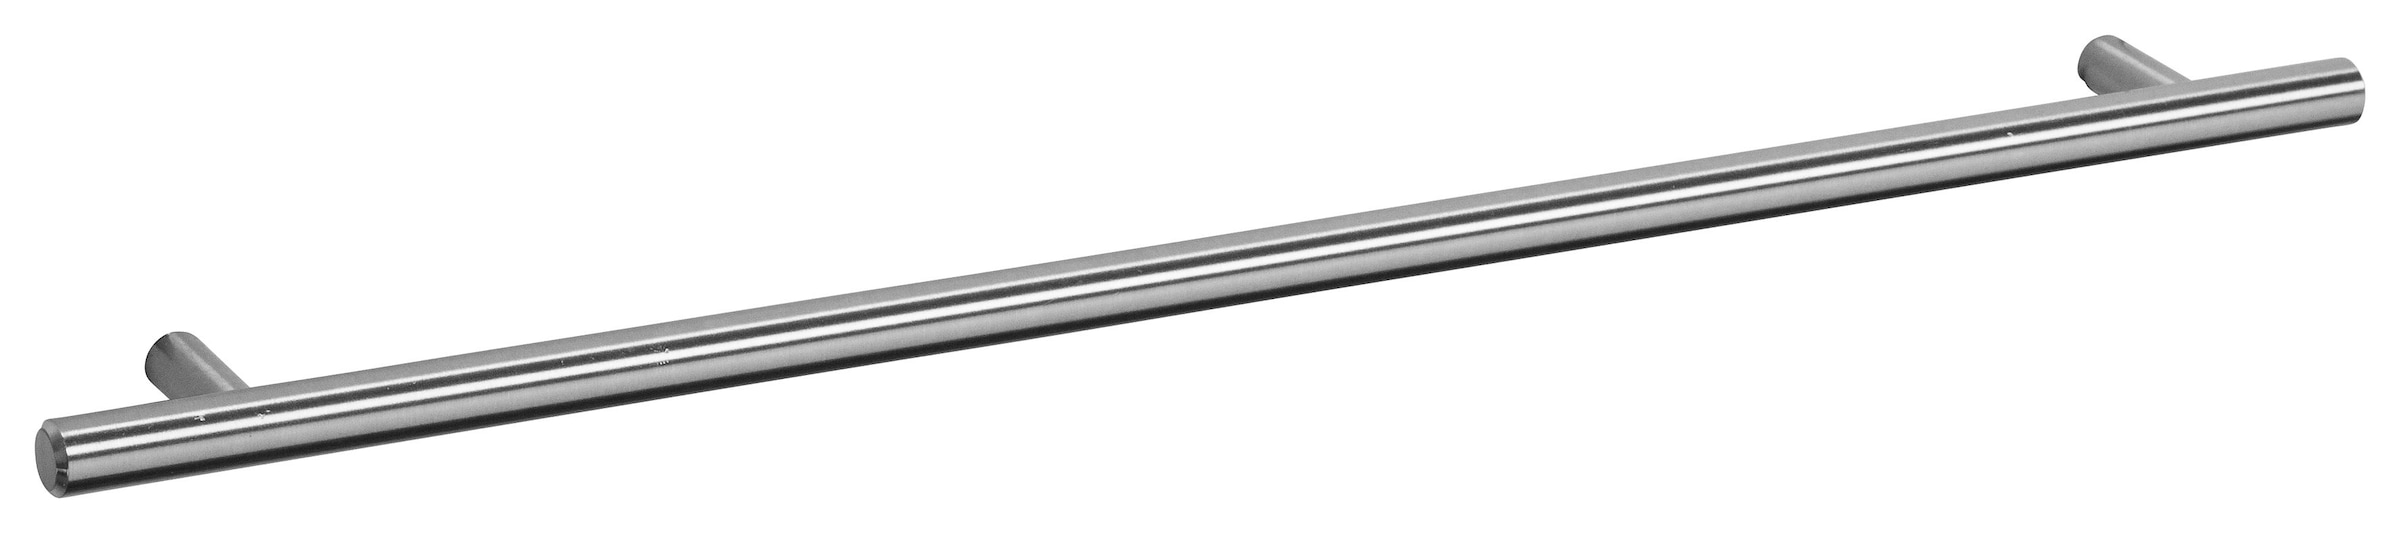 OPTIFIT Spülenschrank »Bern«, 100 cm breit, mit 2 Türen, höhenverstellbare Füße, mit Metallgriffen